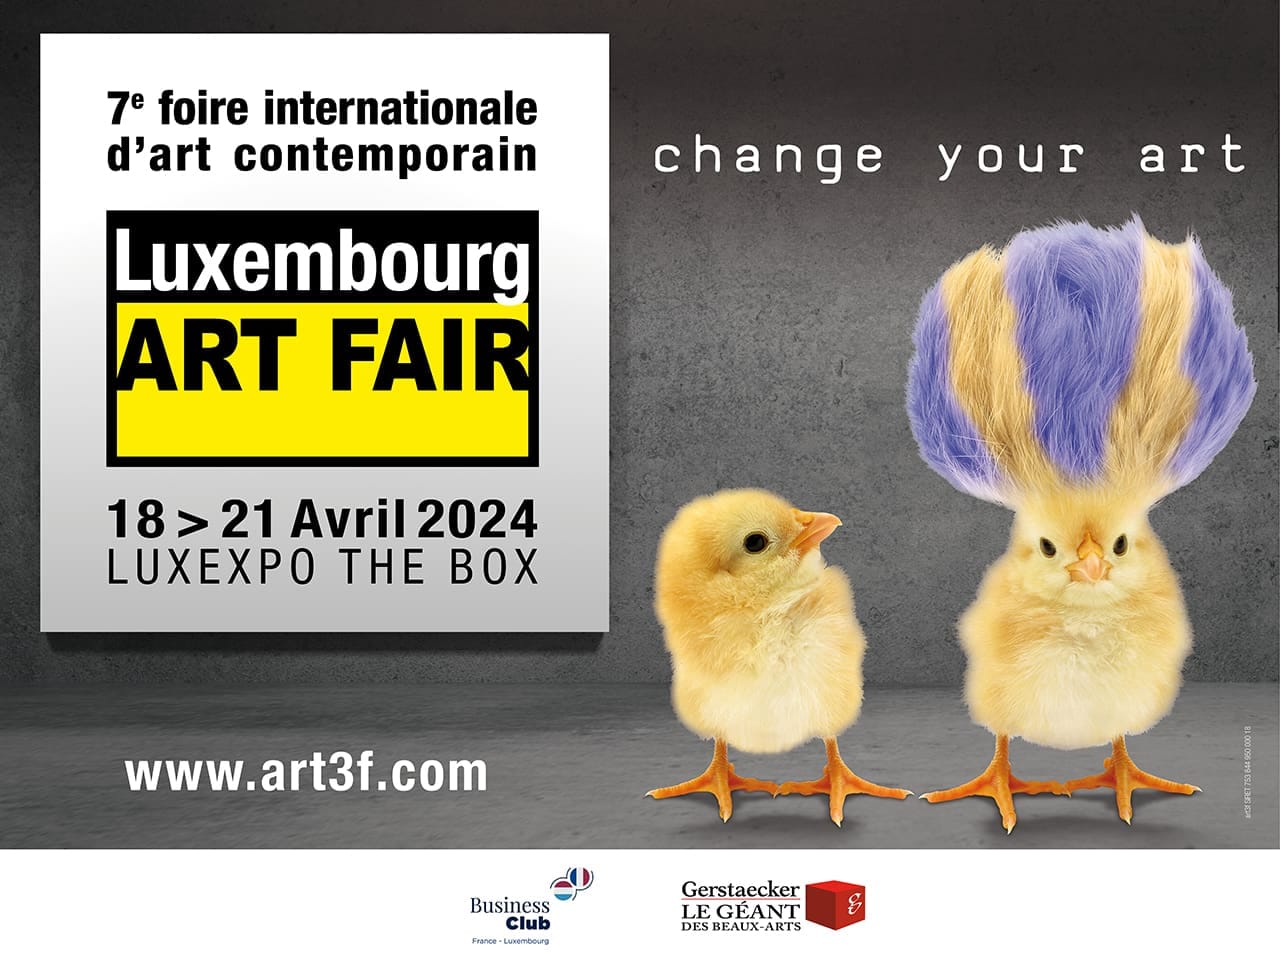 Art Fair Luxembourg,17-21 Avril